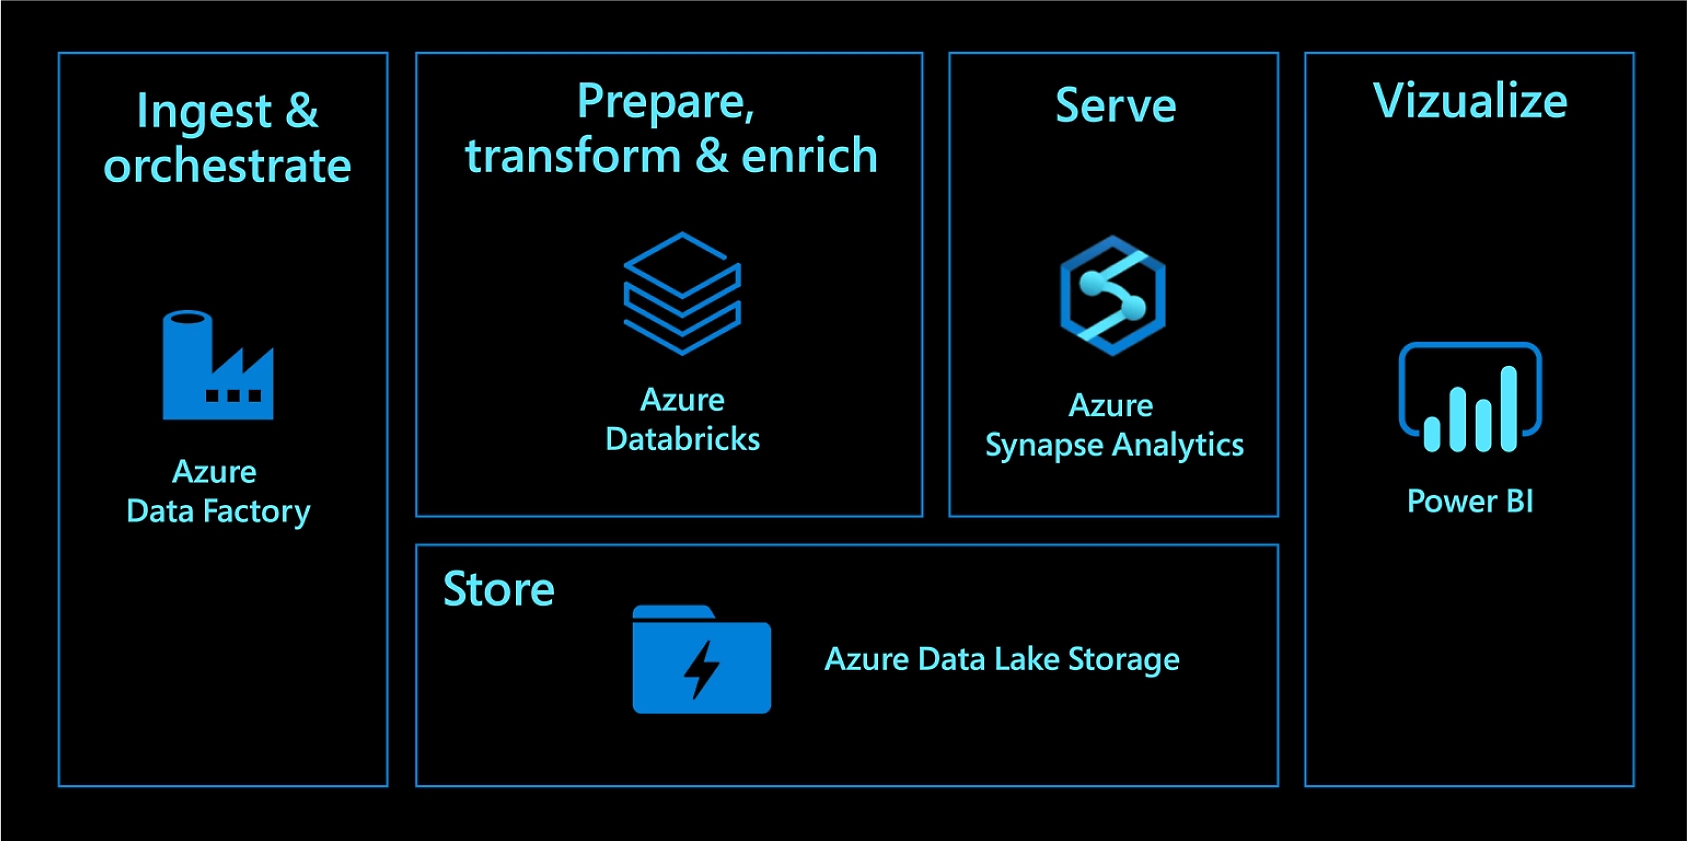 Pozyskuj i aranżuj dane w usłudze Azure Data Factory. Przygotowuj, przekształcaj i wzbogacaj je, korzystając z usługi Azure Databricks. Obsługuj w usłudze Azure Synapse Analytics. Przechowuj w usłudze Azure Data Lake Storage. Wizualizuj przy użyciu usługi Power BI.